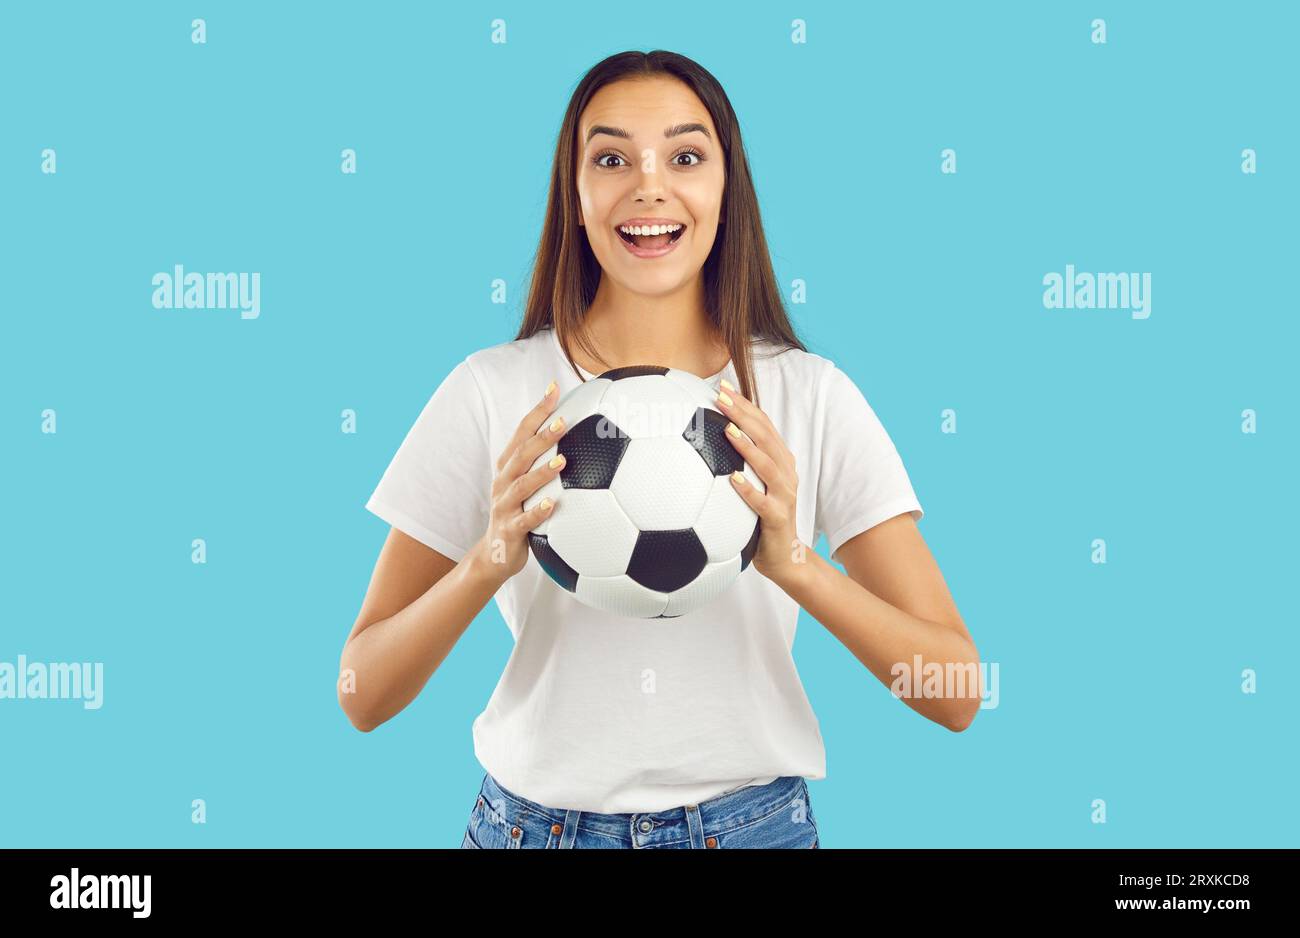 Soccer fan happy brunette girl holding football ball in hand on light blue background. Stock Photo